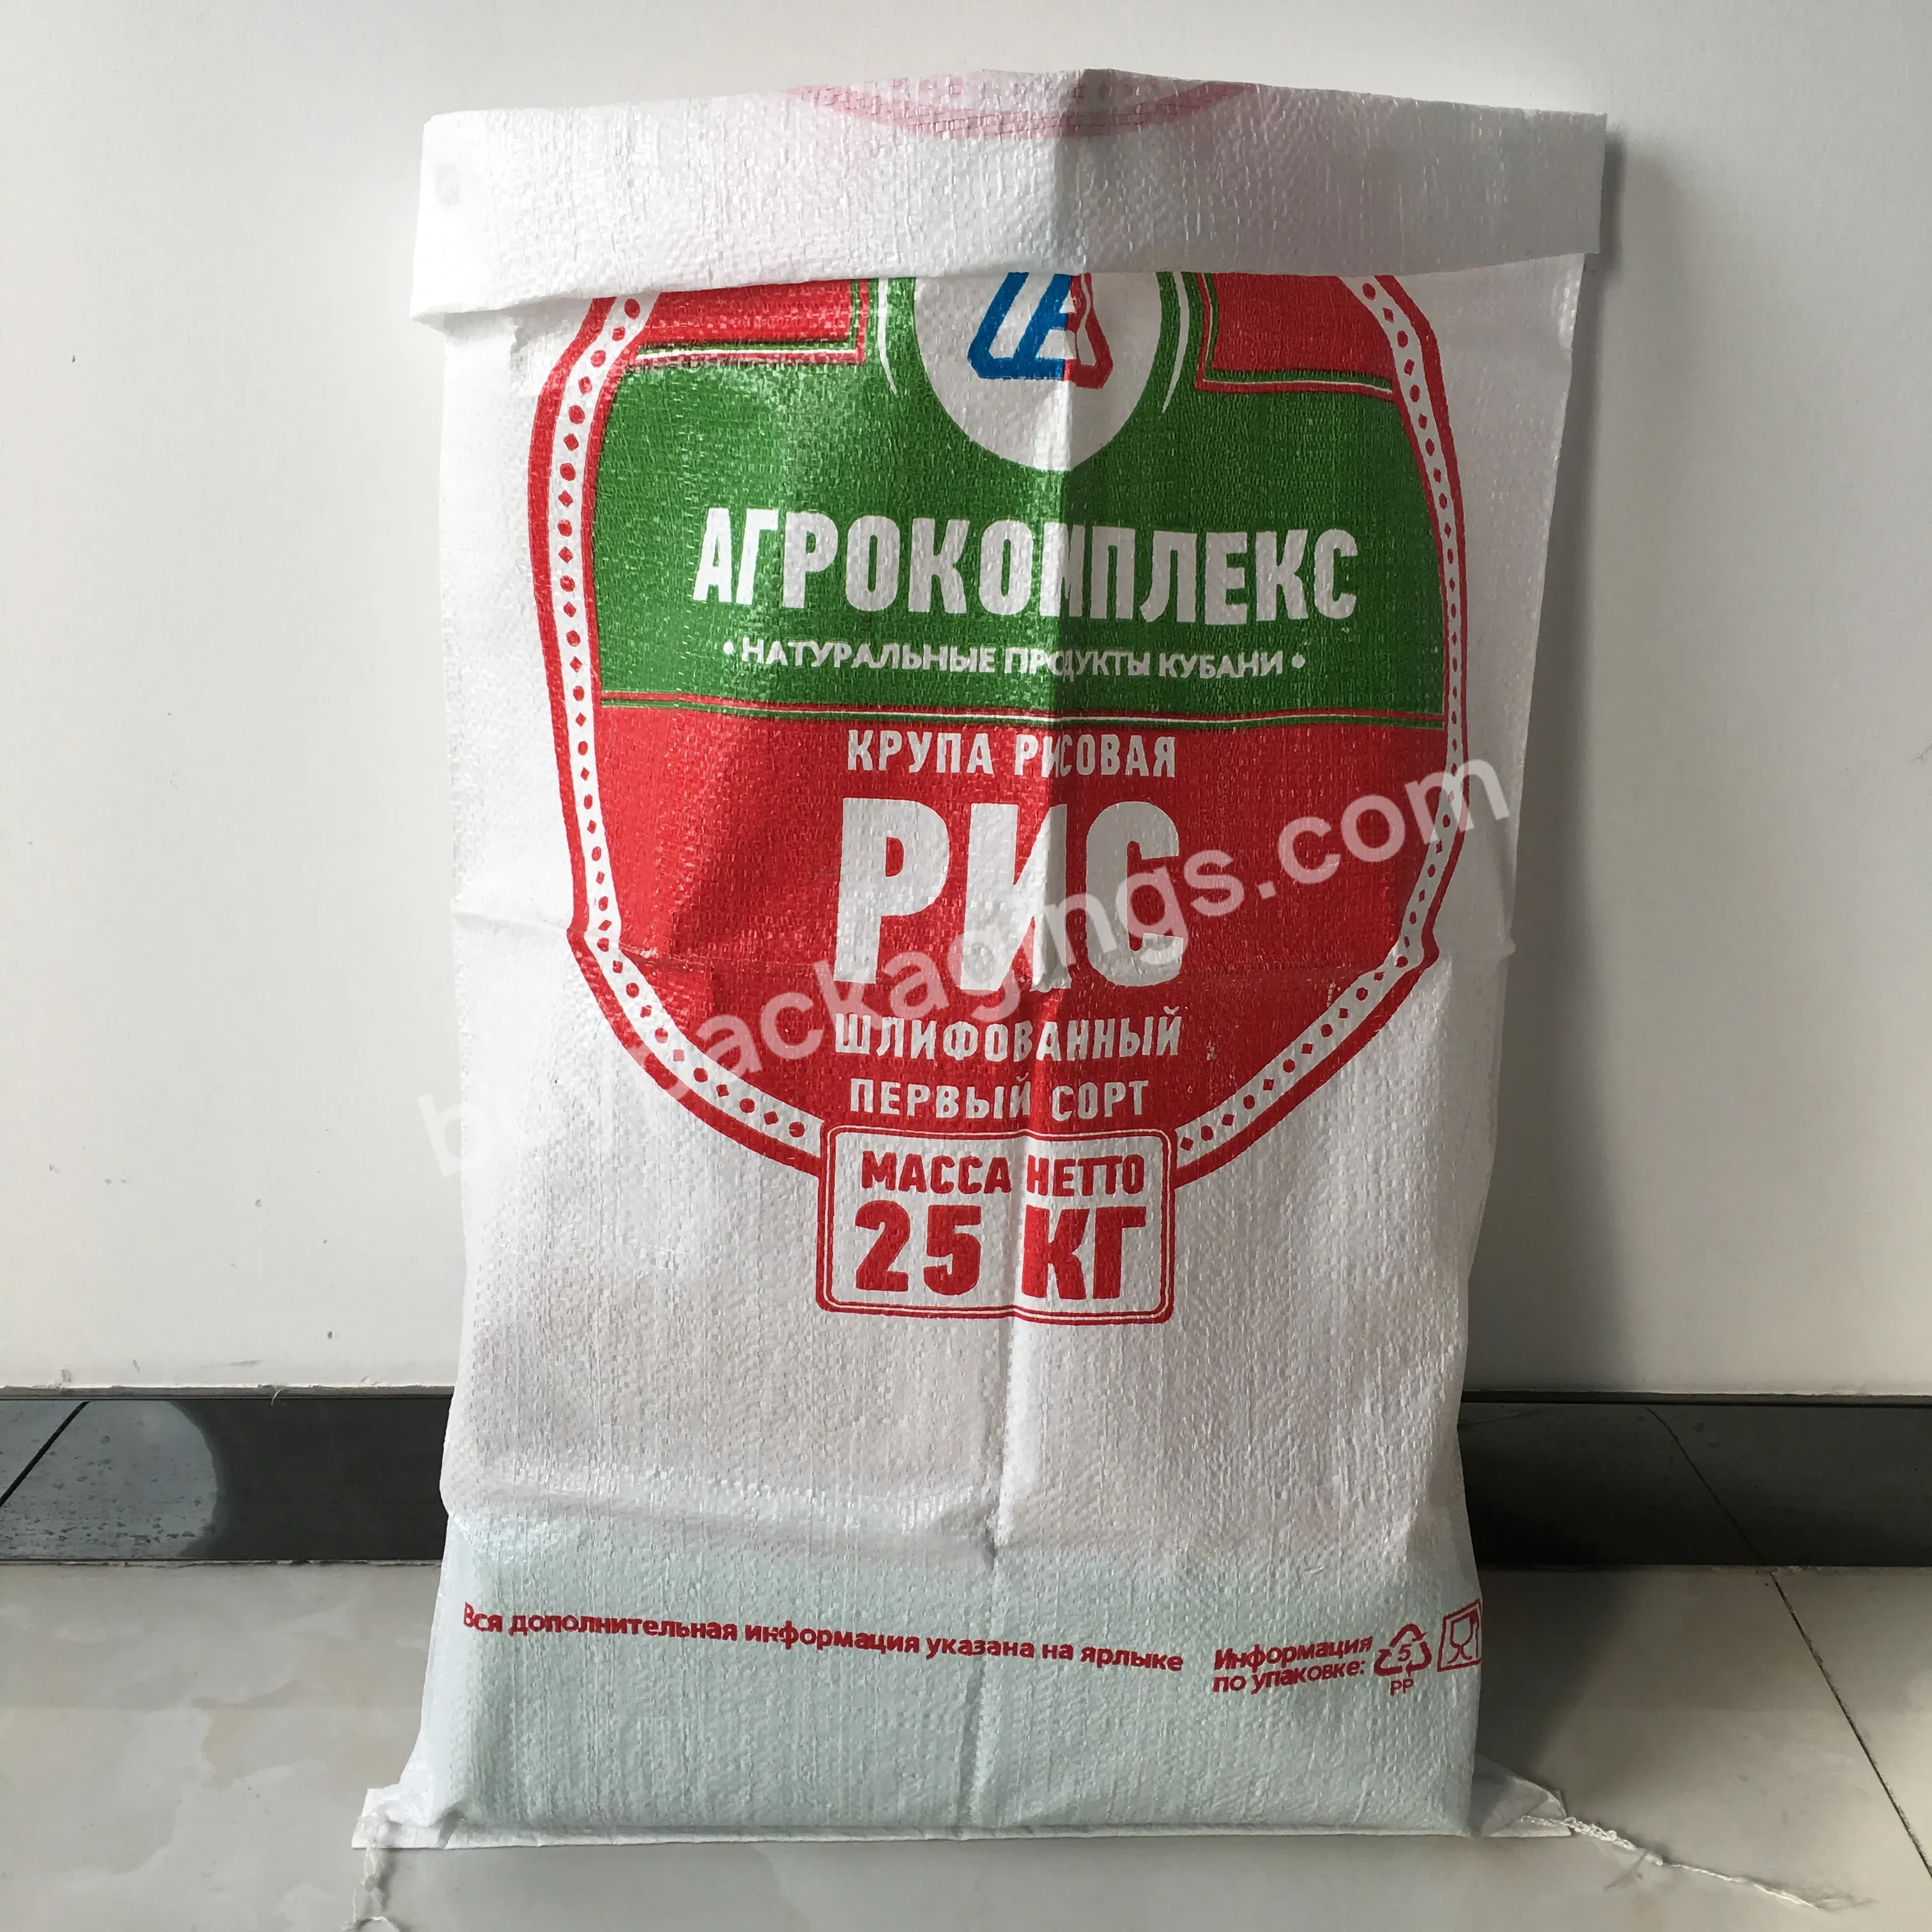 25kg Polypropylene Bag Animal Feed Bags Woven Sack For Feeds - Buy Animal Feed Bags,Fertilizer Bag,Sacos De Polipropileno De 50 Kg.